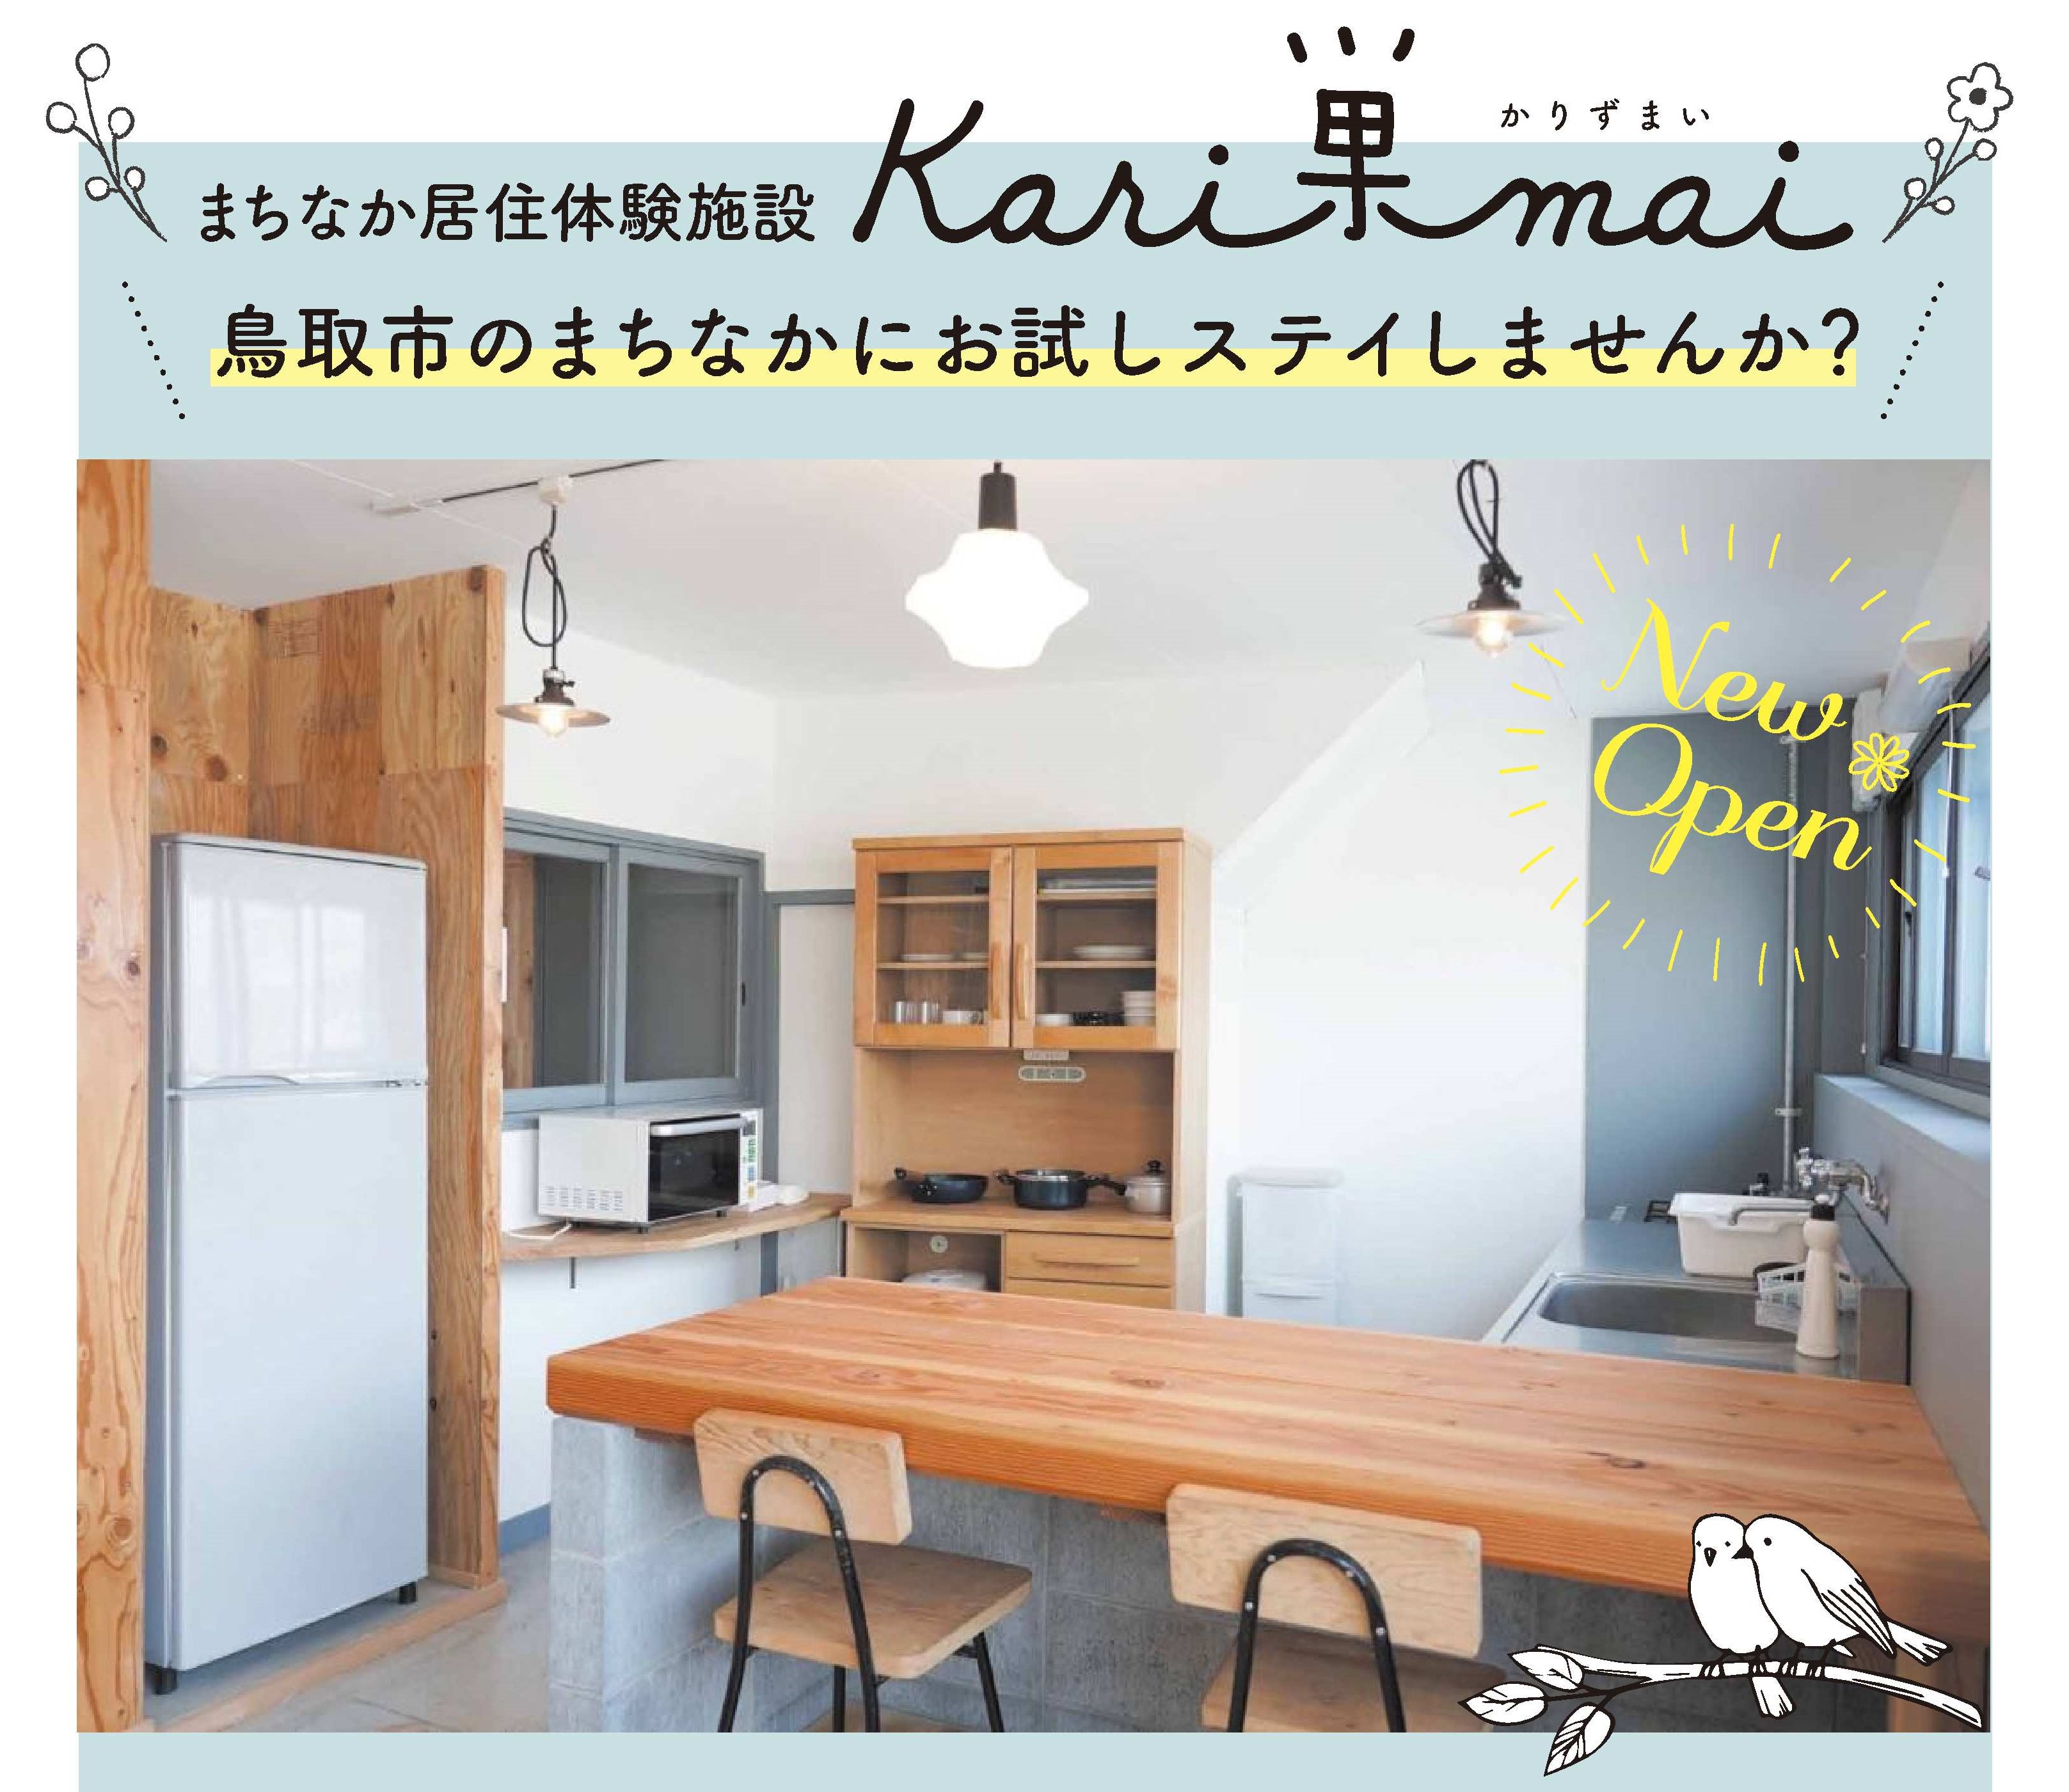 鳥取市のまちなか生活を体験してみませんか。鳥取市まちなか居住体験施設『Kari巣mai』（かりずまい）のご案内